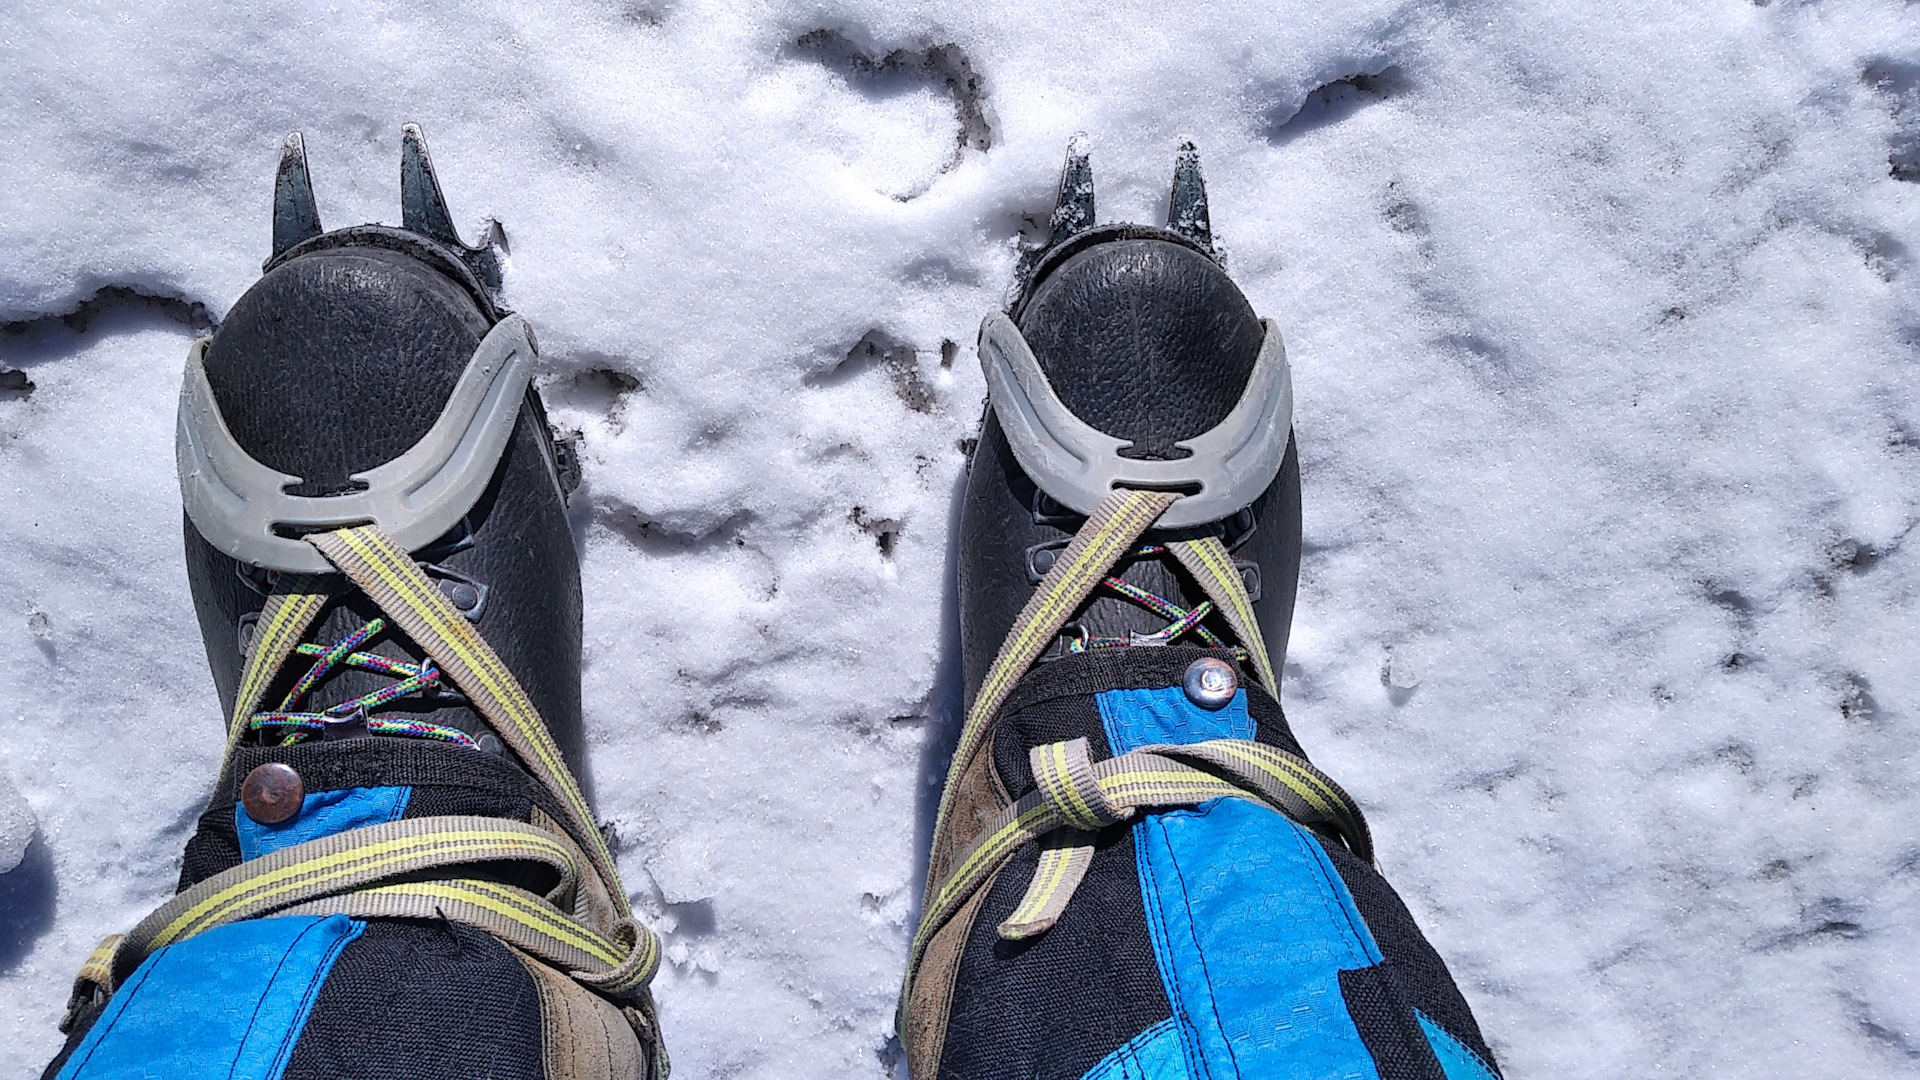 Погода на эльбрусе на 3. Обувь для восхождения на Эльбрус. Базальт Эльбрус. Бахилы для восхождения на Эльбрус. Желтые ботинки Эльбрус.